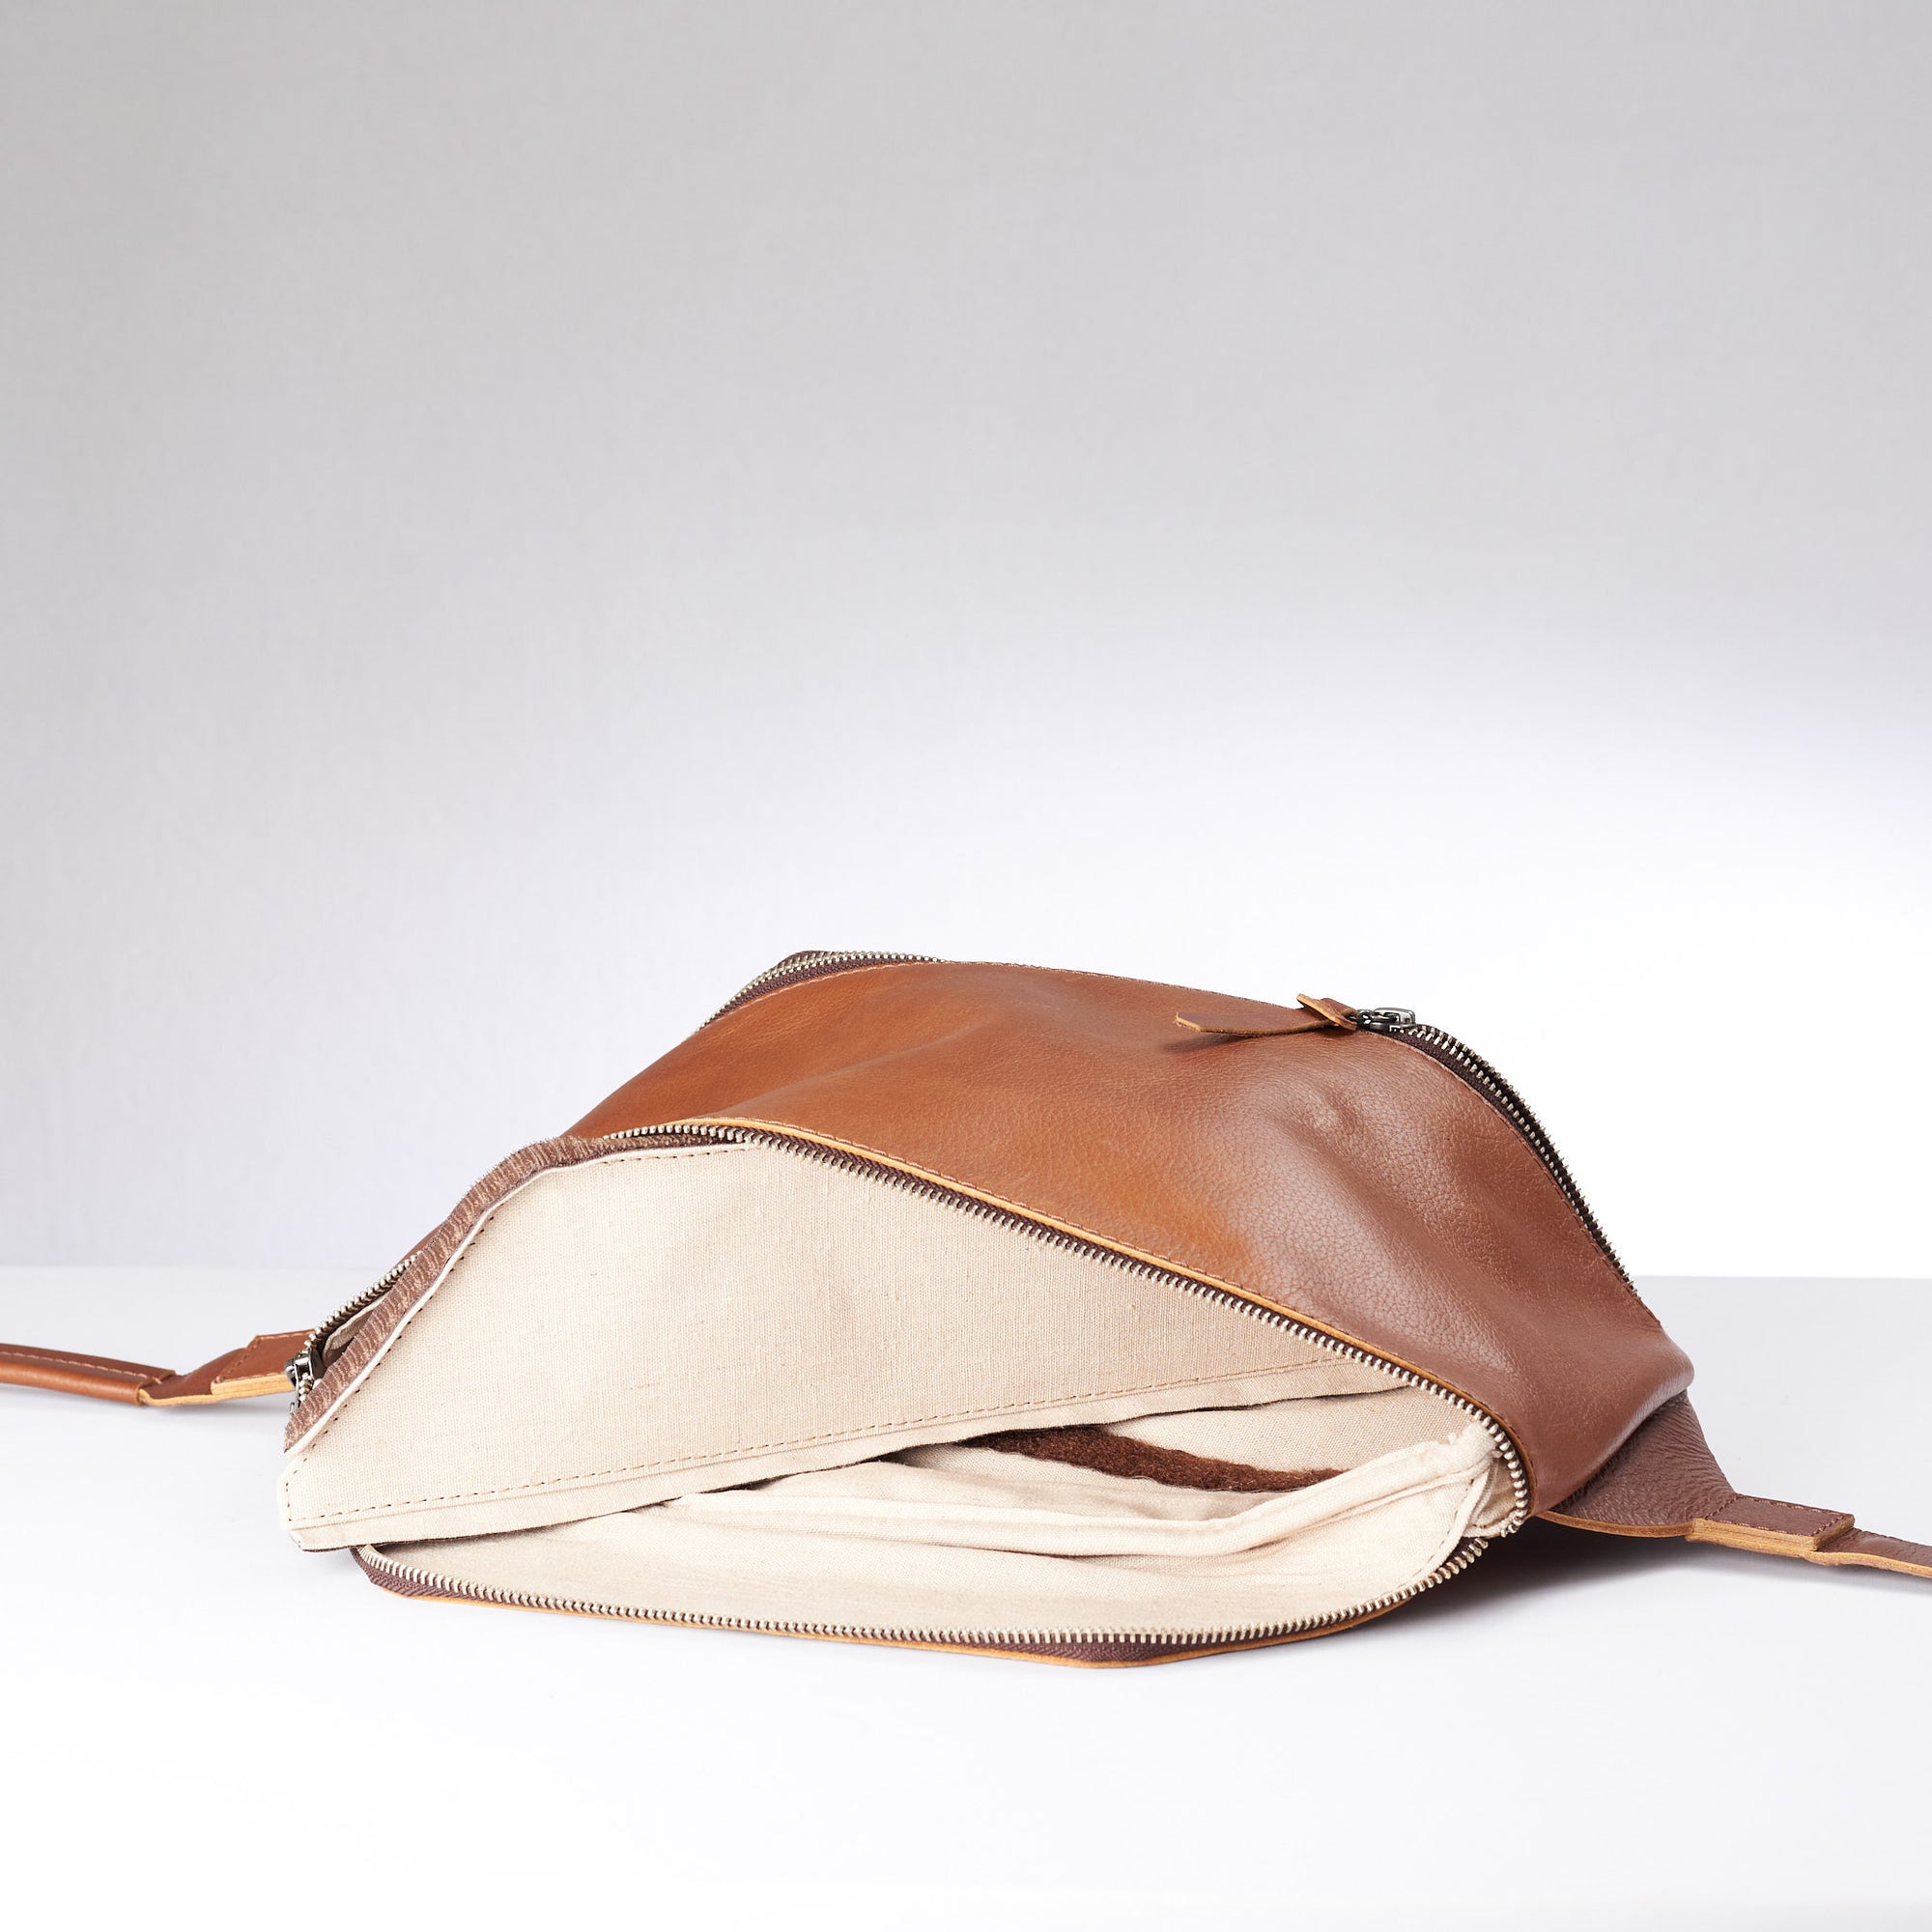 Tan Fenek sling bag backpack made by Capra Leather. Interior of shoulder bag with detachable divider.